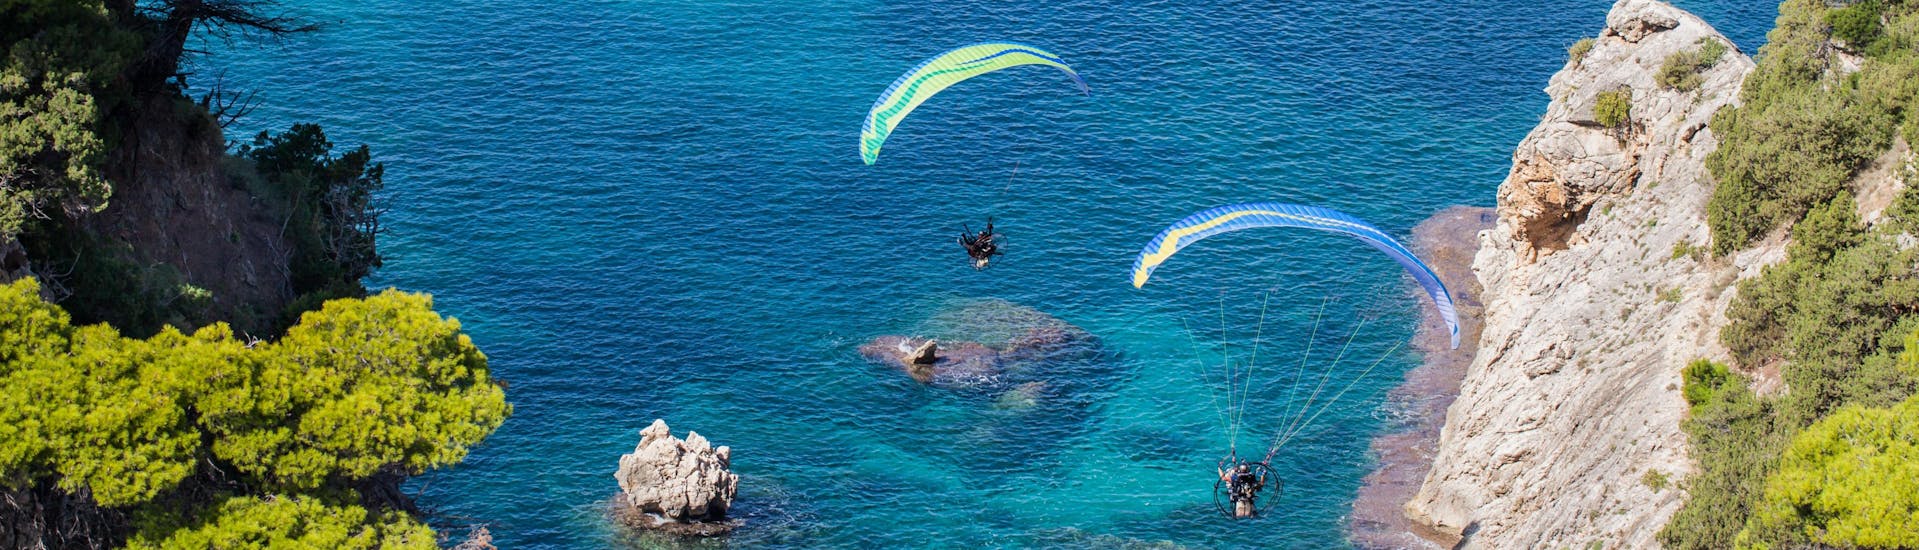 Un entusiasmado participante en un vuelo en parapente biplaza sobrevuela  Creta, uno de los sitios más populares para volar en parapente.